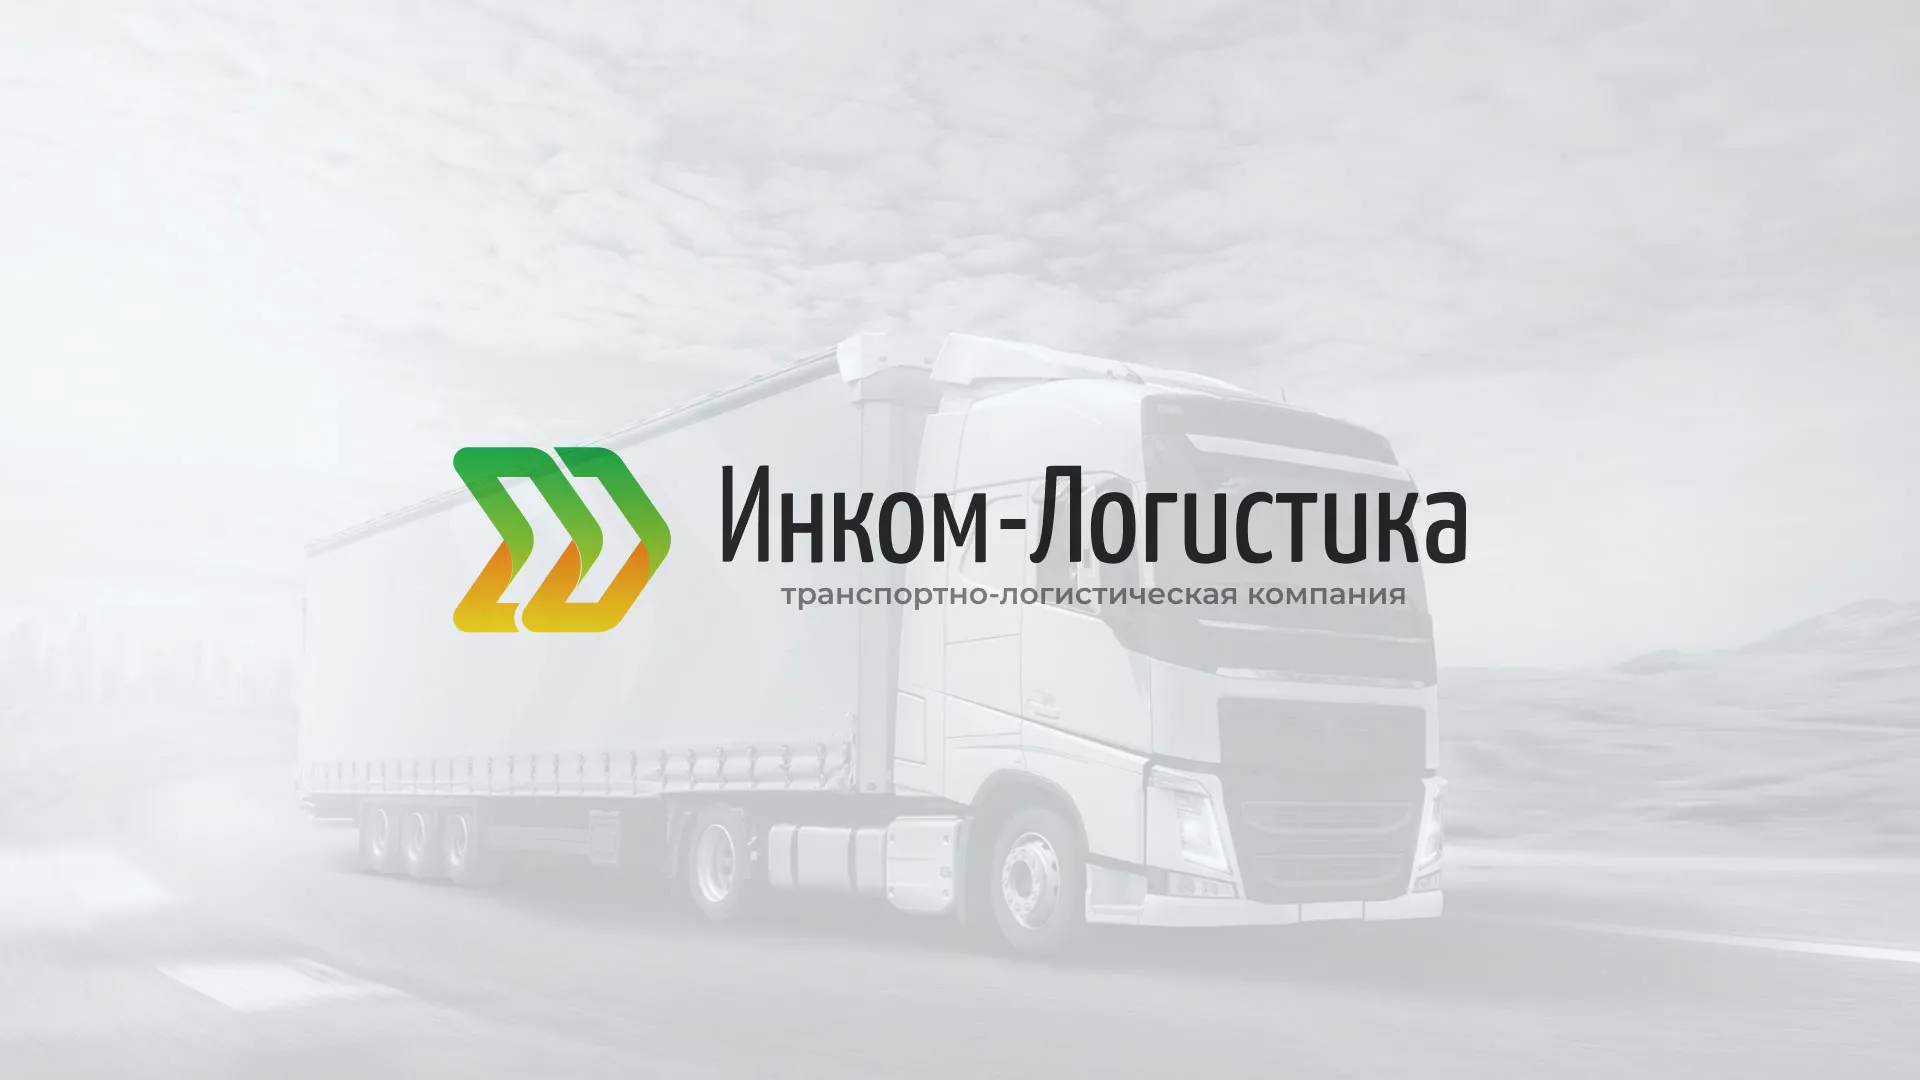 Разработка логотипа и сайта компании «Инком-Логистика» в Петухово